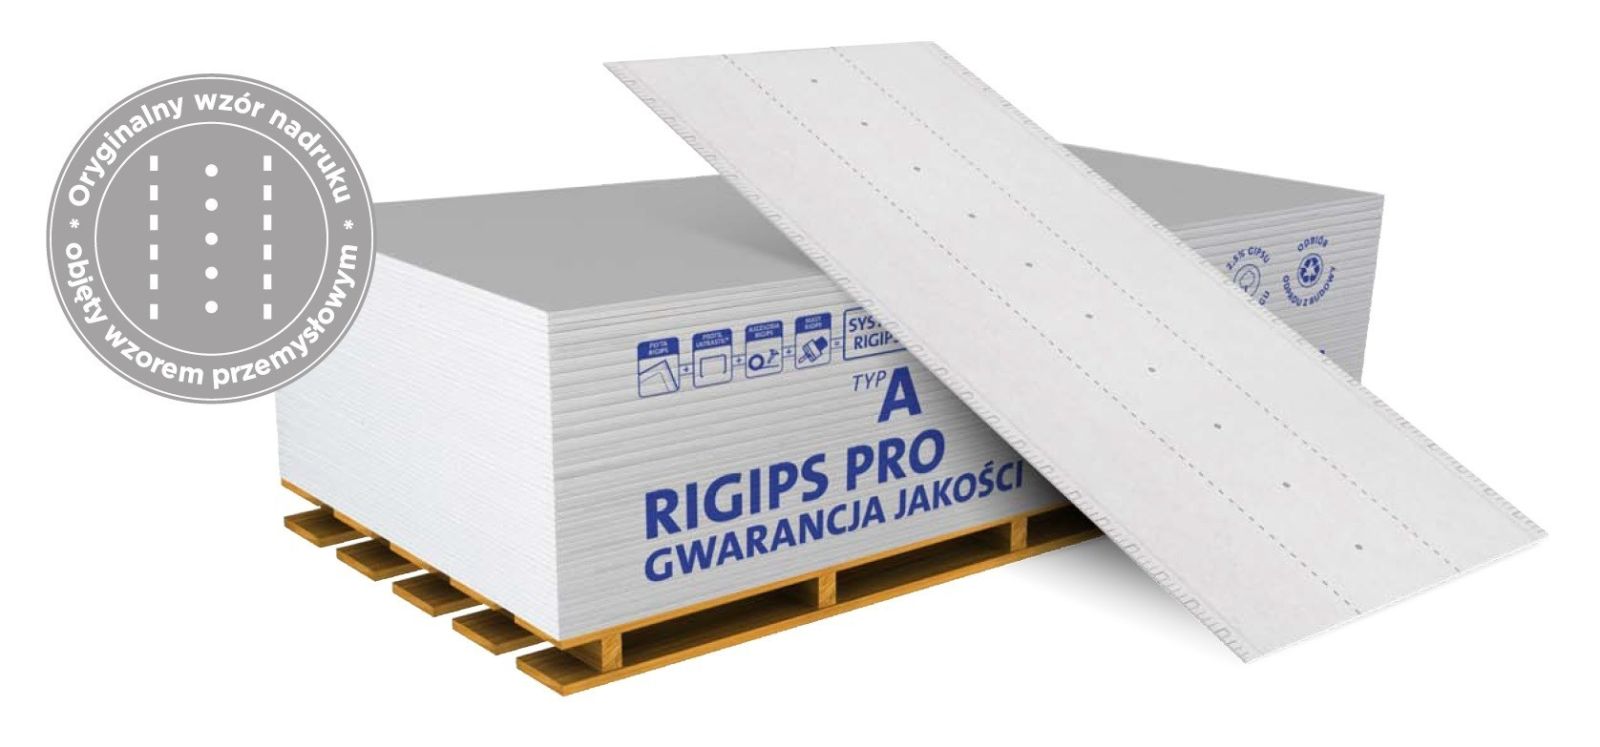 Płyta gipsowo-kartonowa Rigips PRO typ A w udoskonalonej wersji, z wygodnym nadrukiem